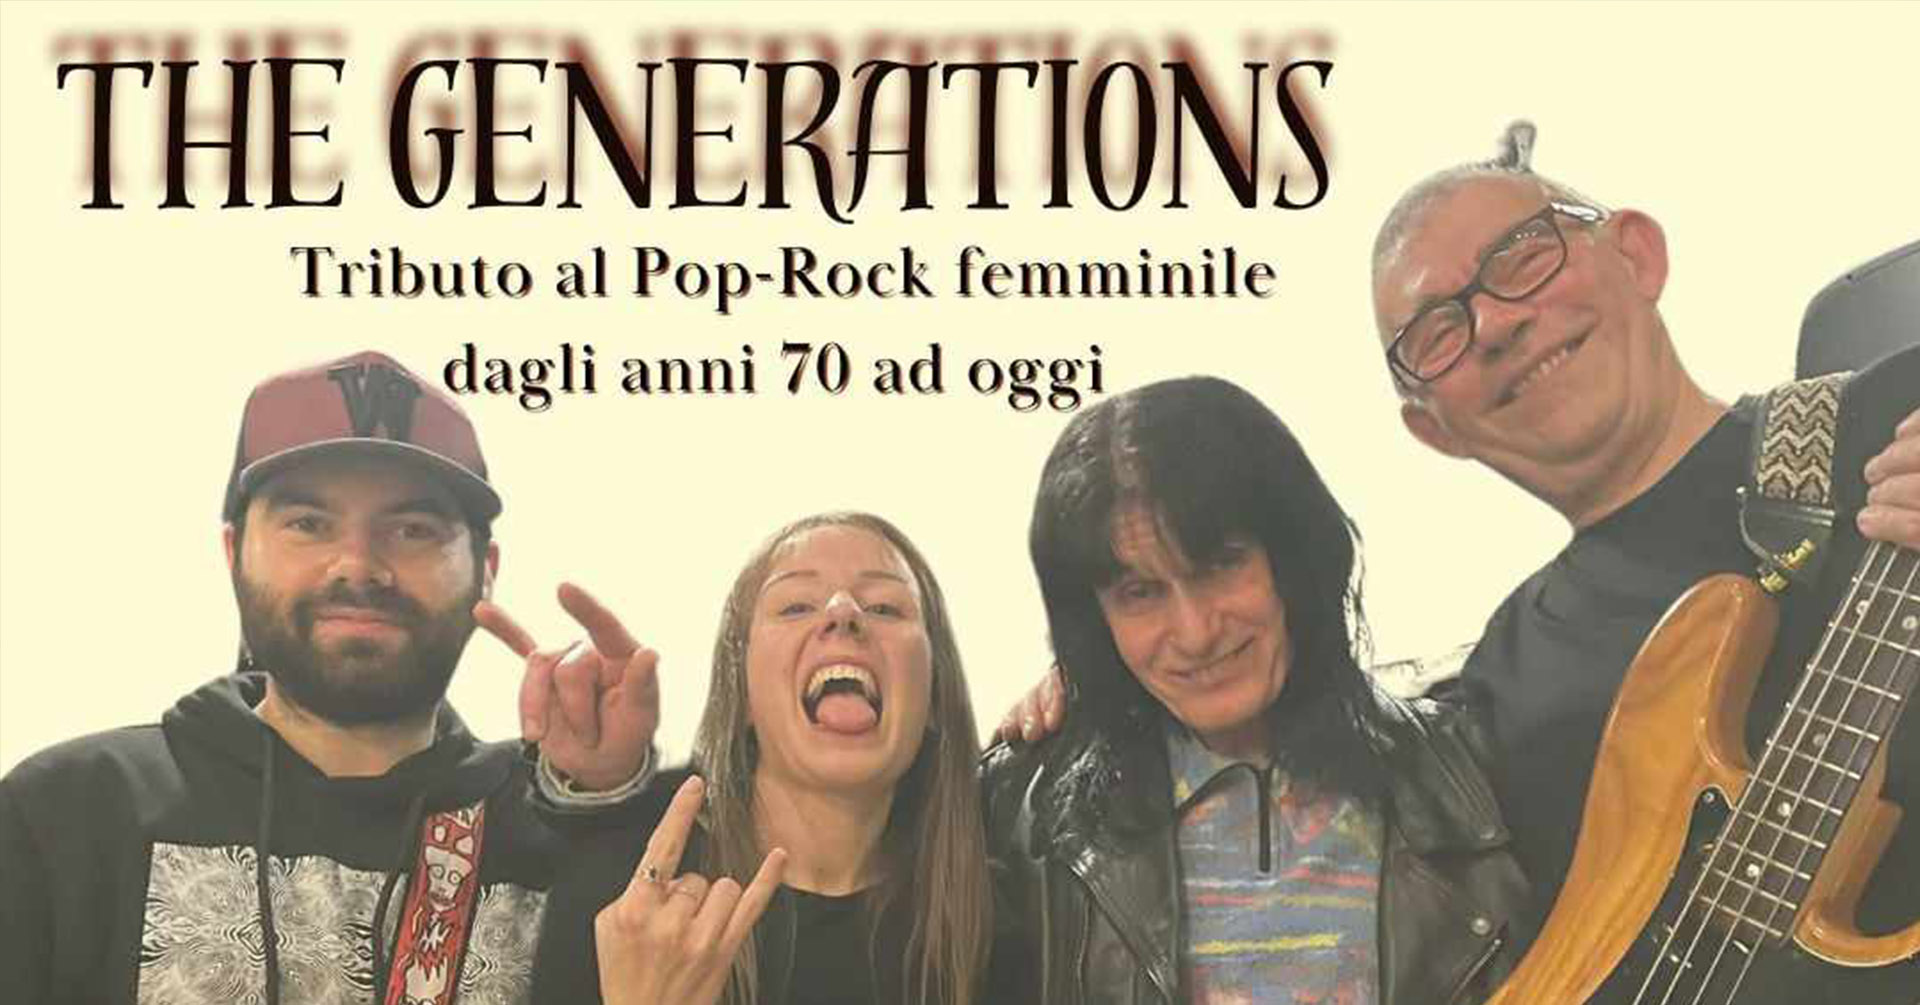 Rock al femminile con i The generation